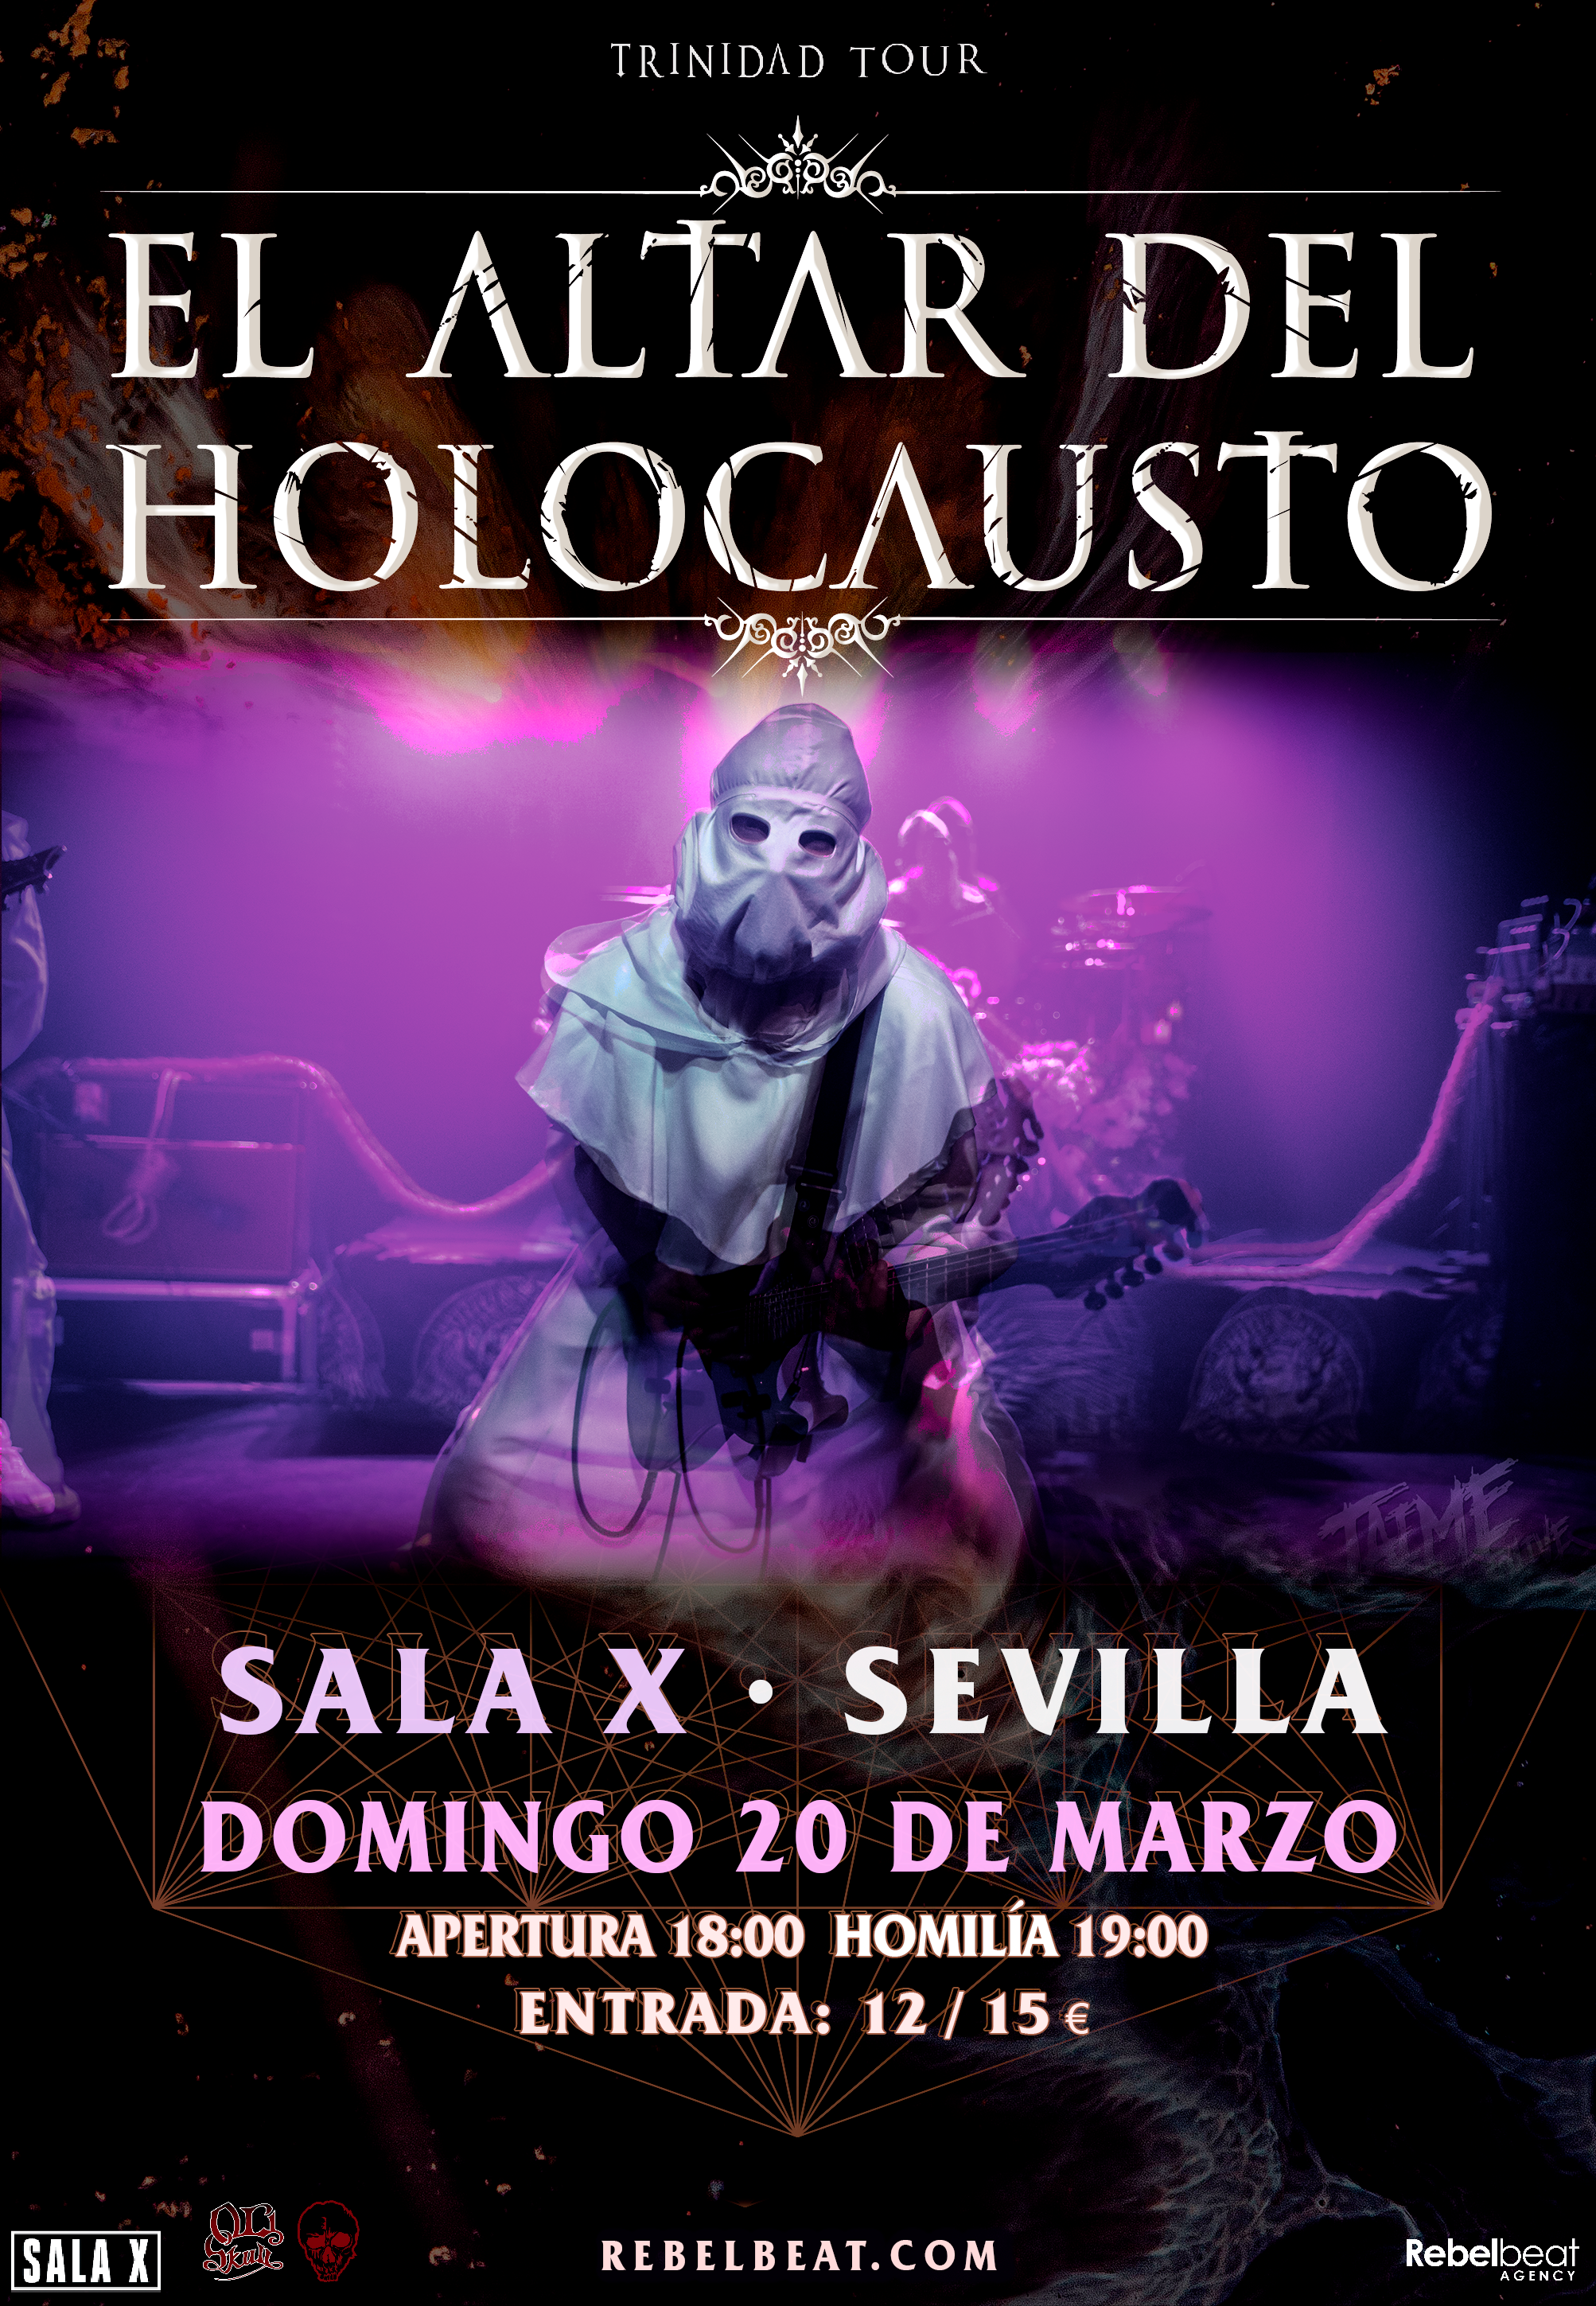 El Altar del Holocausto: 20 de marzo en Sevilla (Sala X)